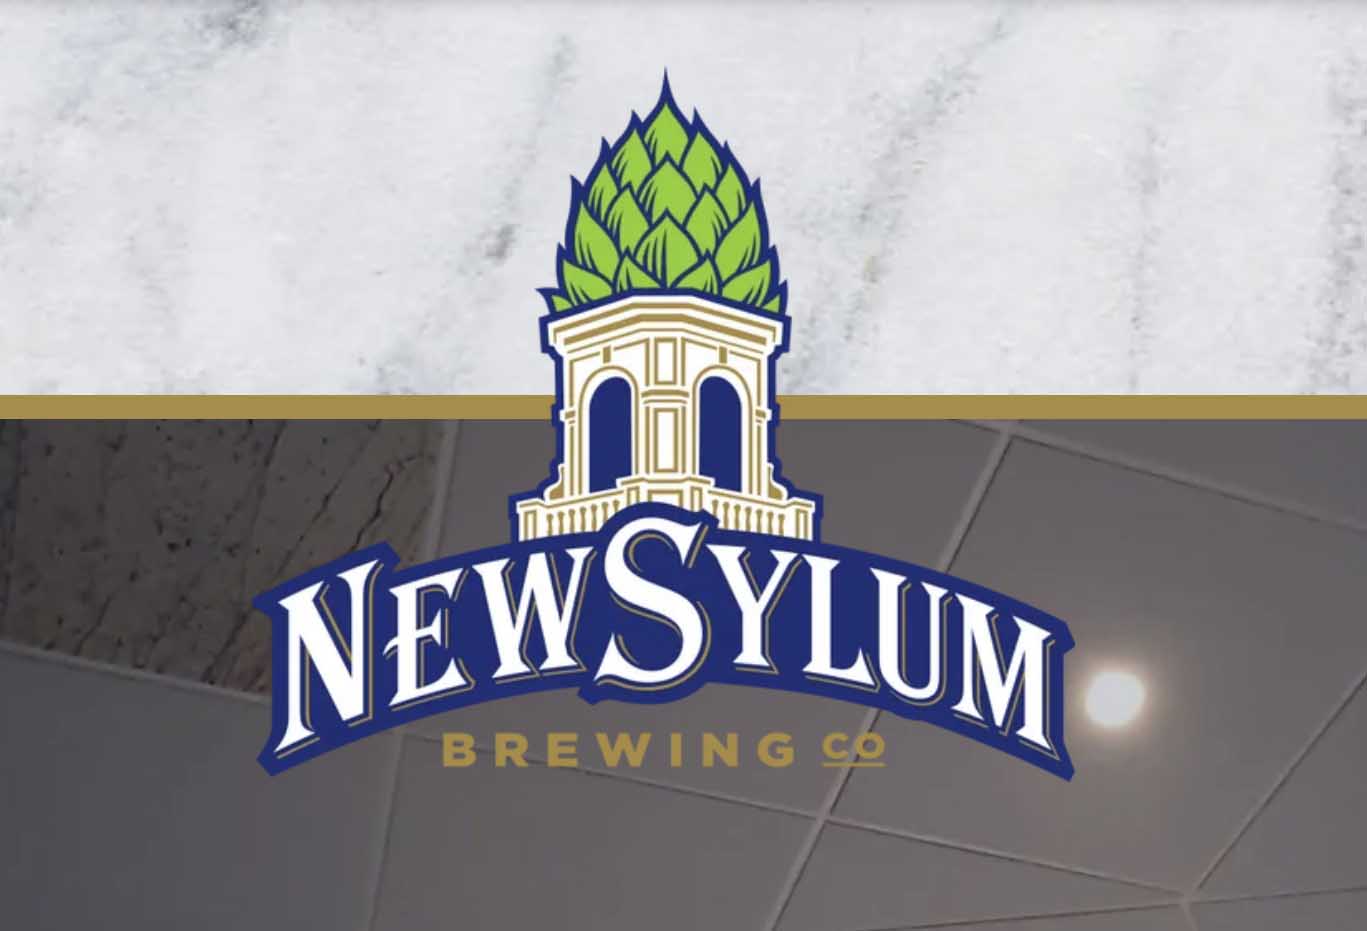 Newsylum Brewing Co